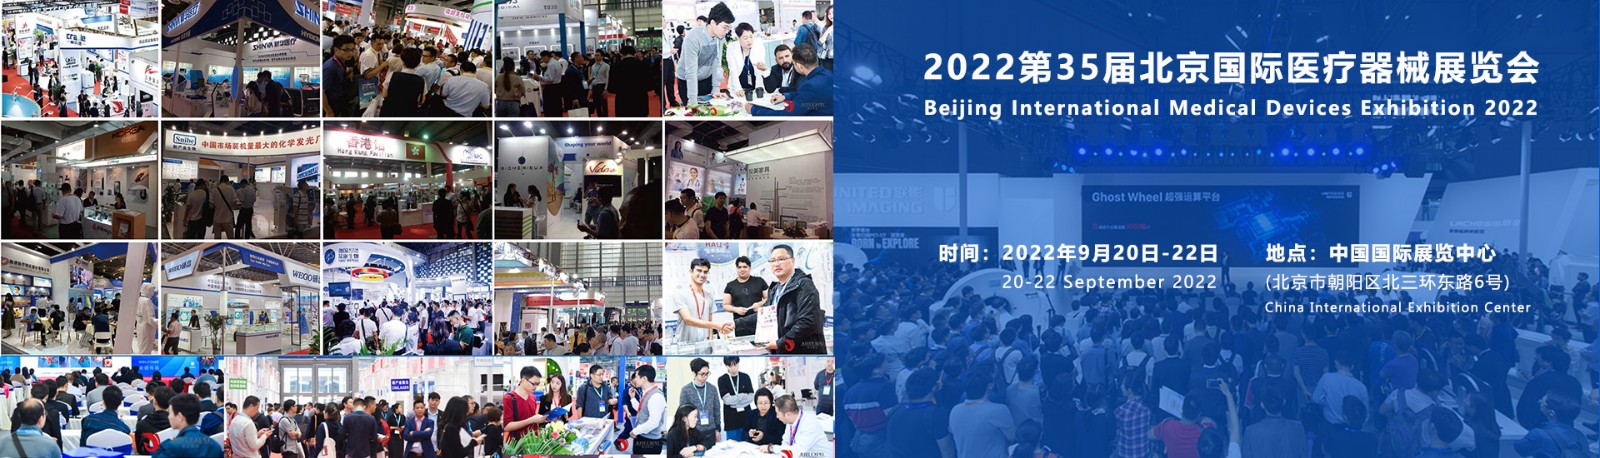 2022北京国际医疗器械展览会-医学影像展区